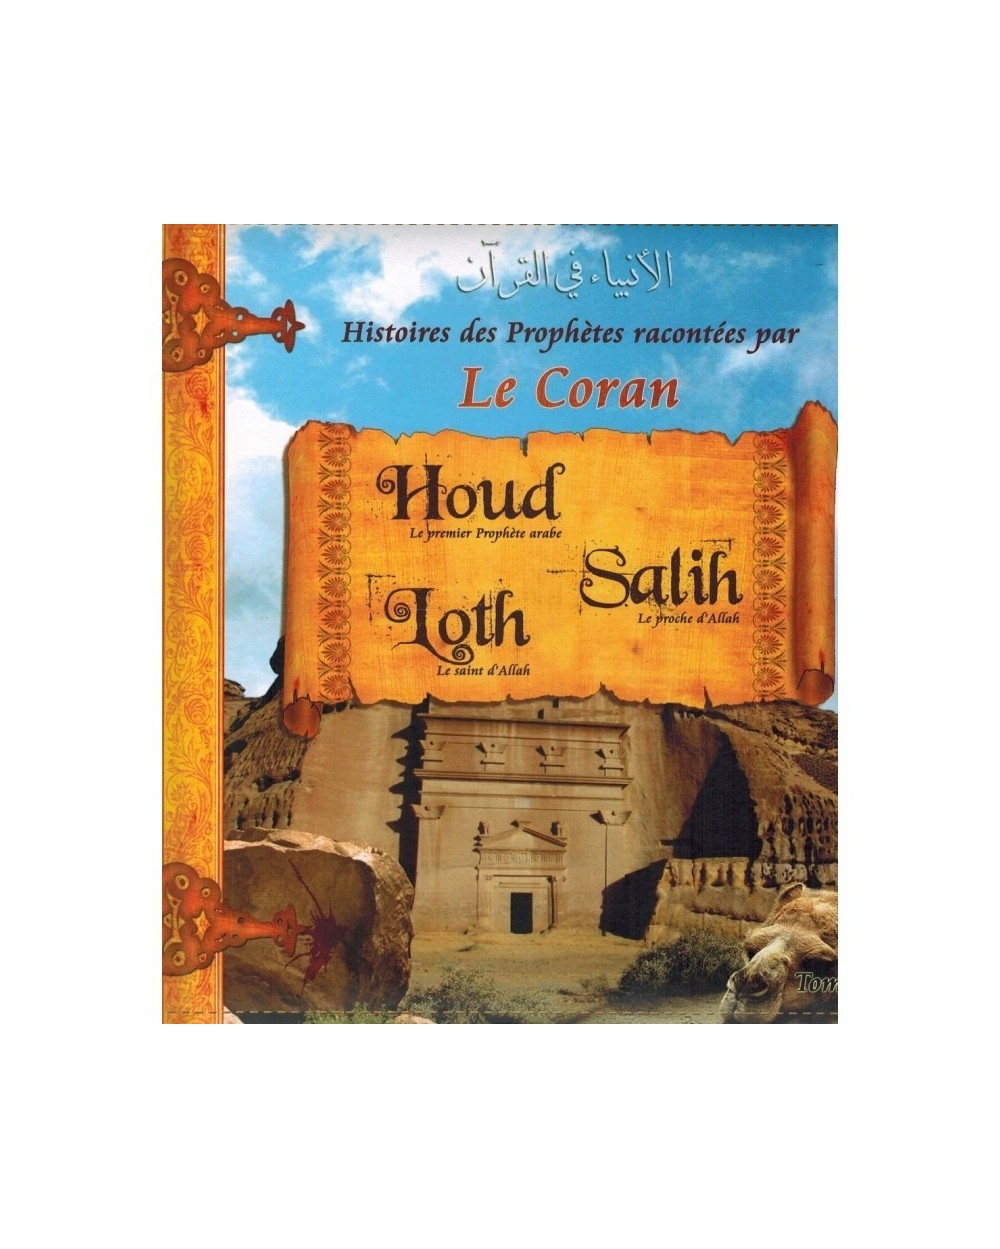 Stories of the prophets told by the Koran - Volume 2 (HOUD, SALIH, LOTH)